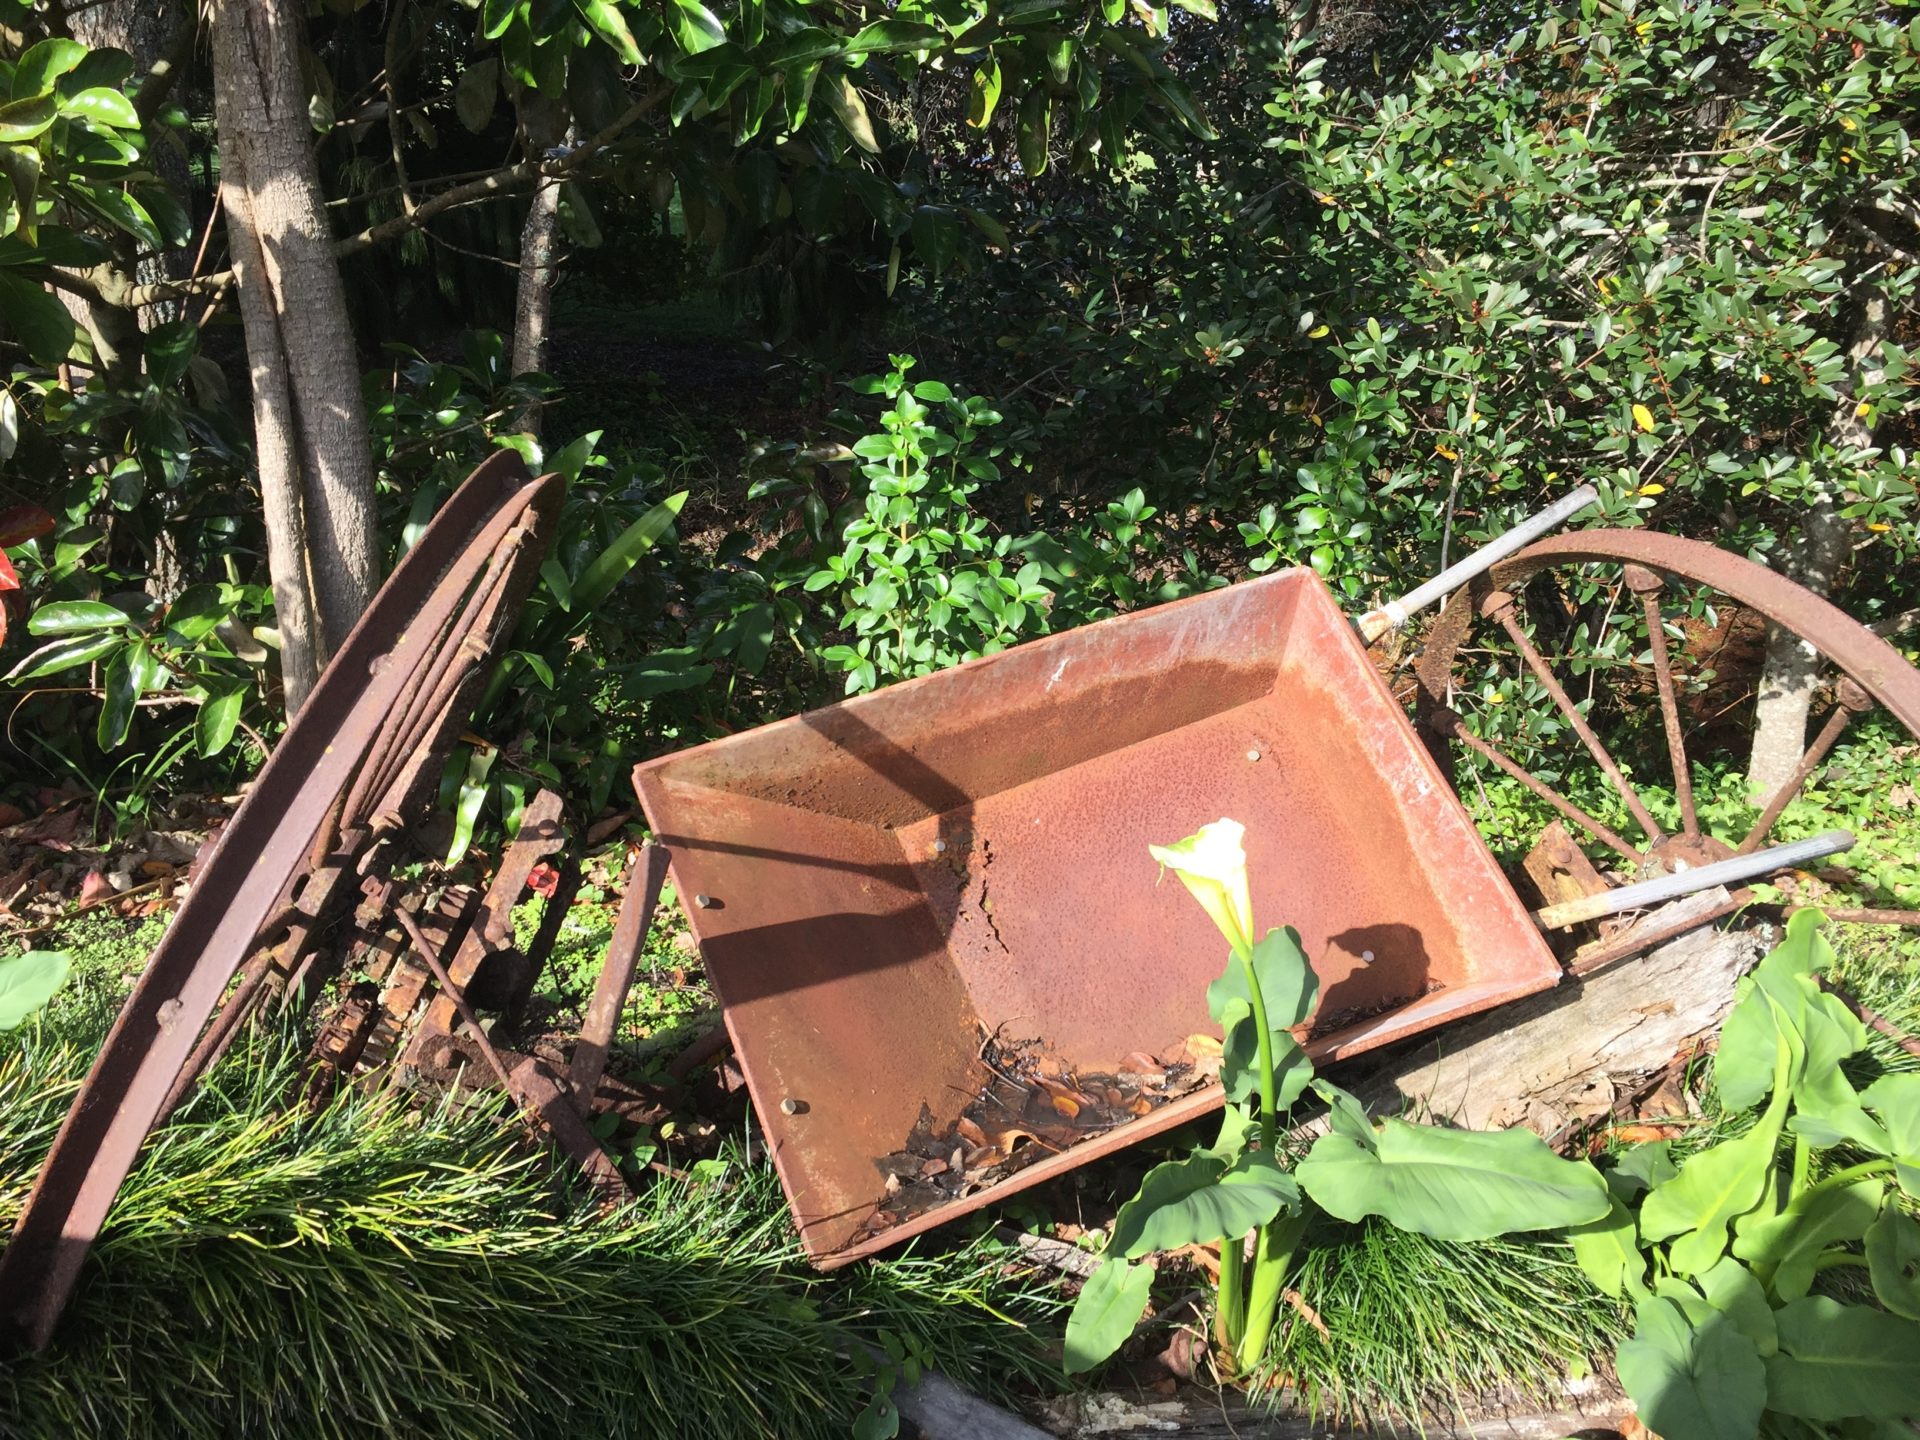 a rusty wheelbarrow in a garden